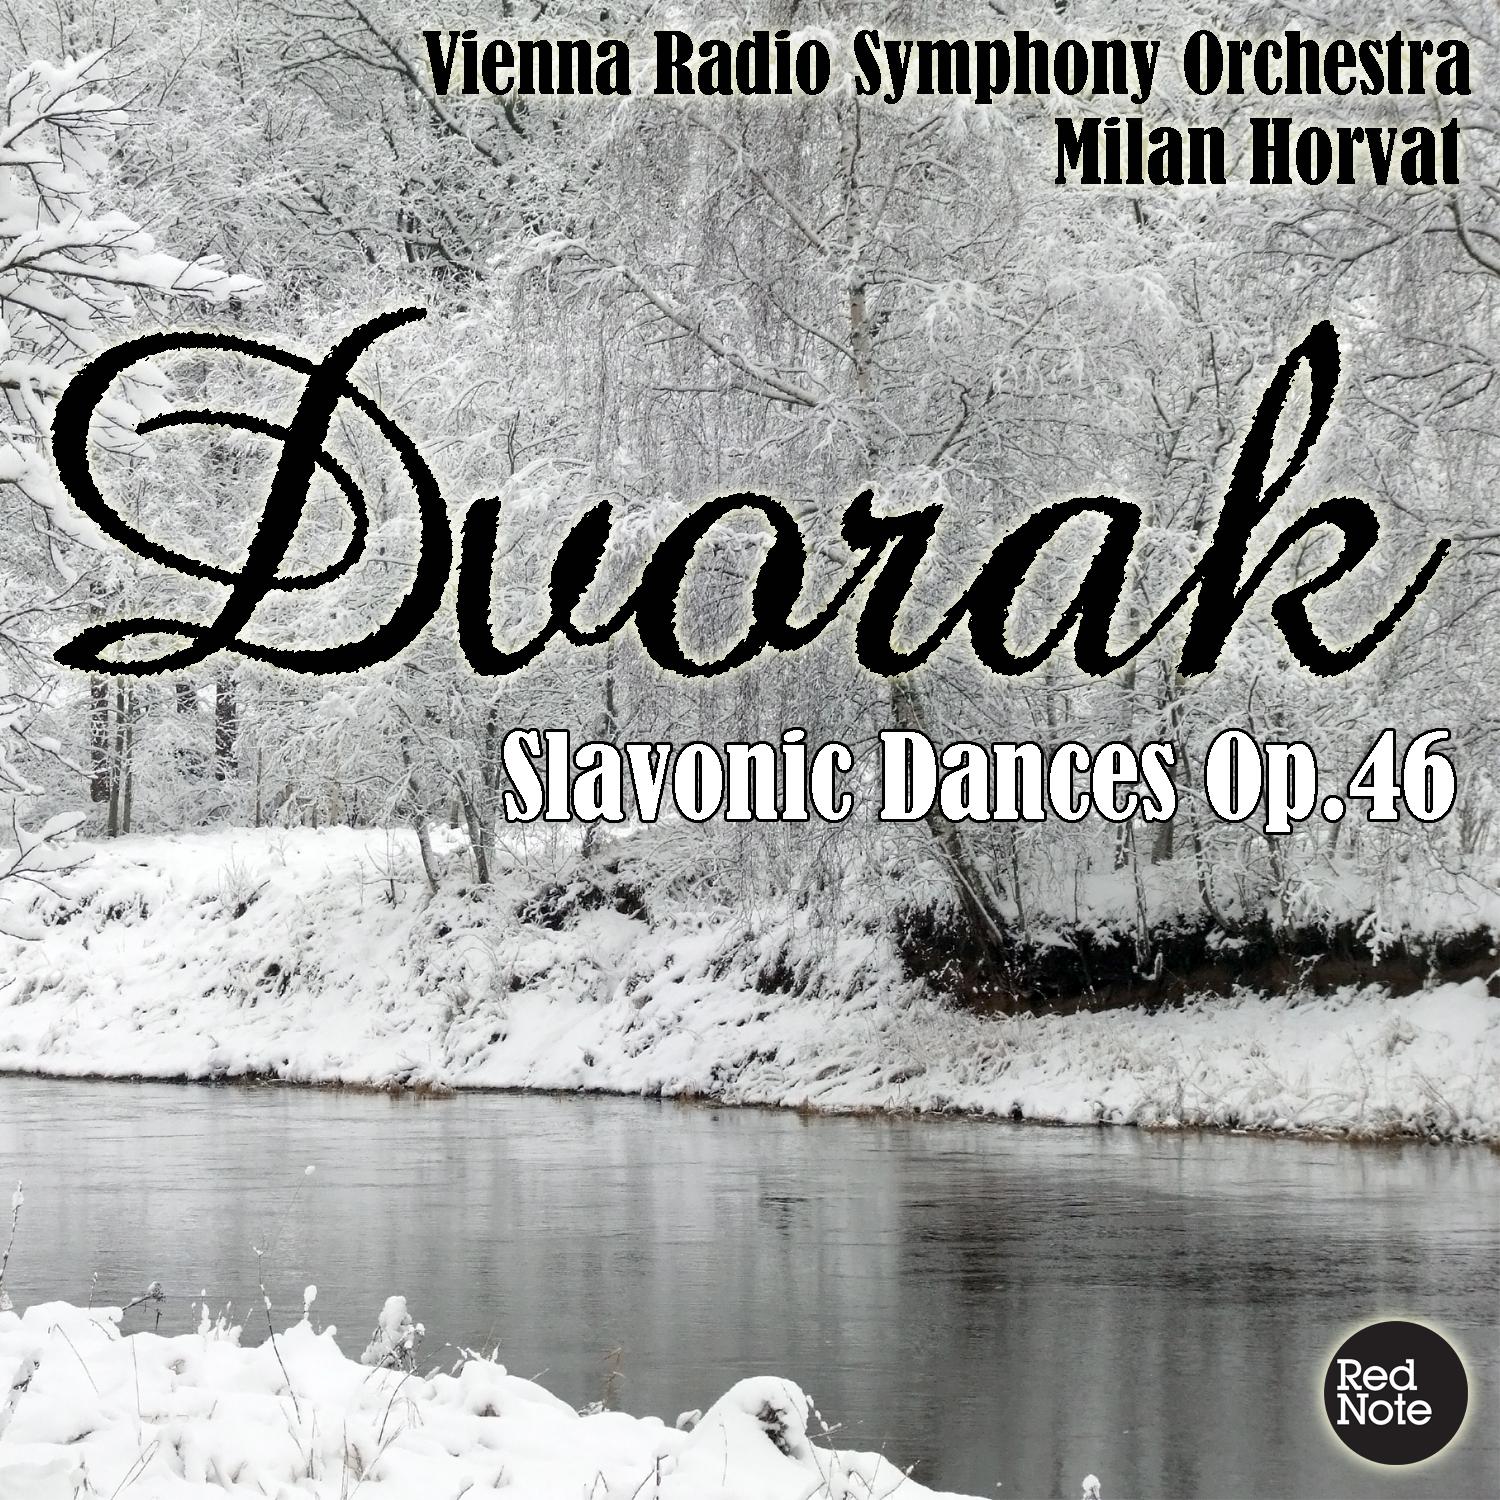 Slavonic Dances in C Minor, Op.46: No.7 - Allegro assai